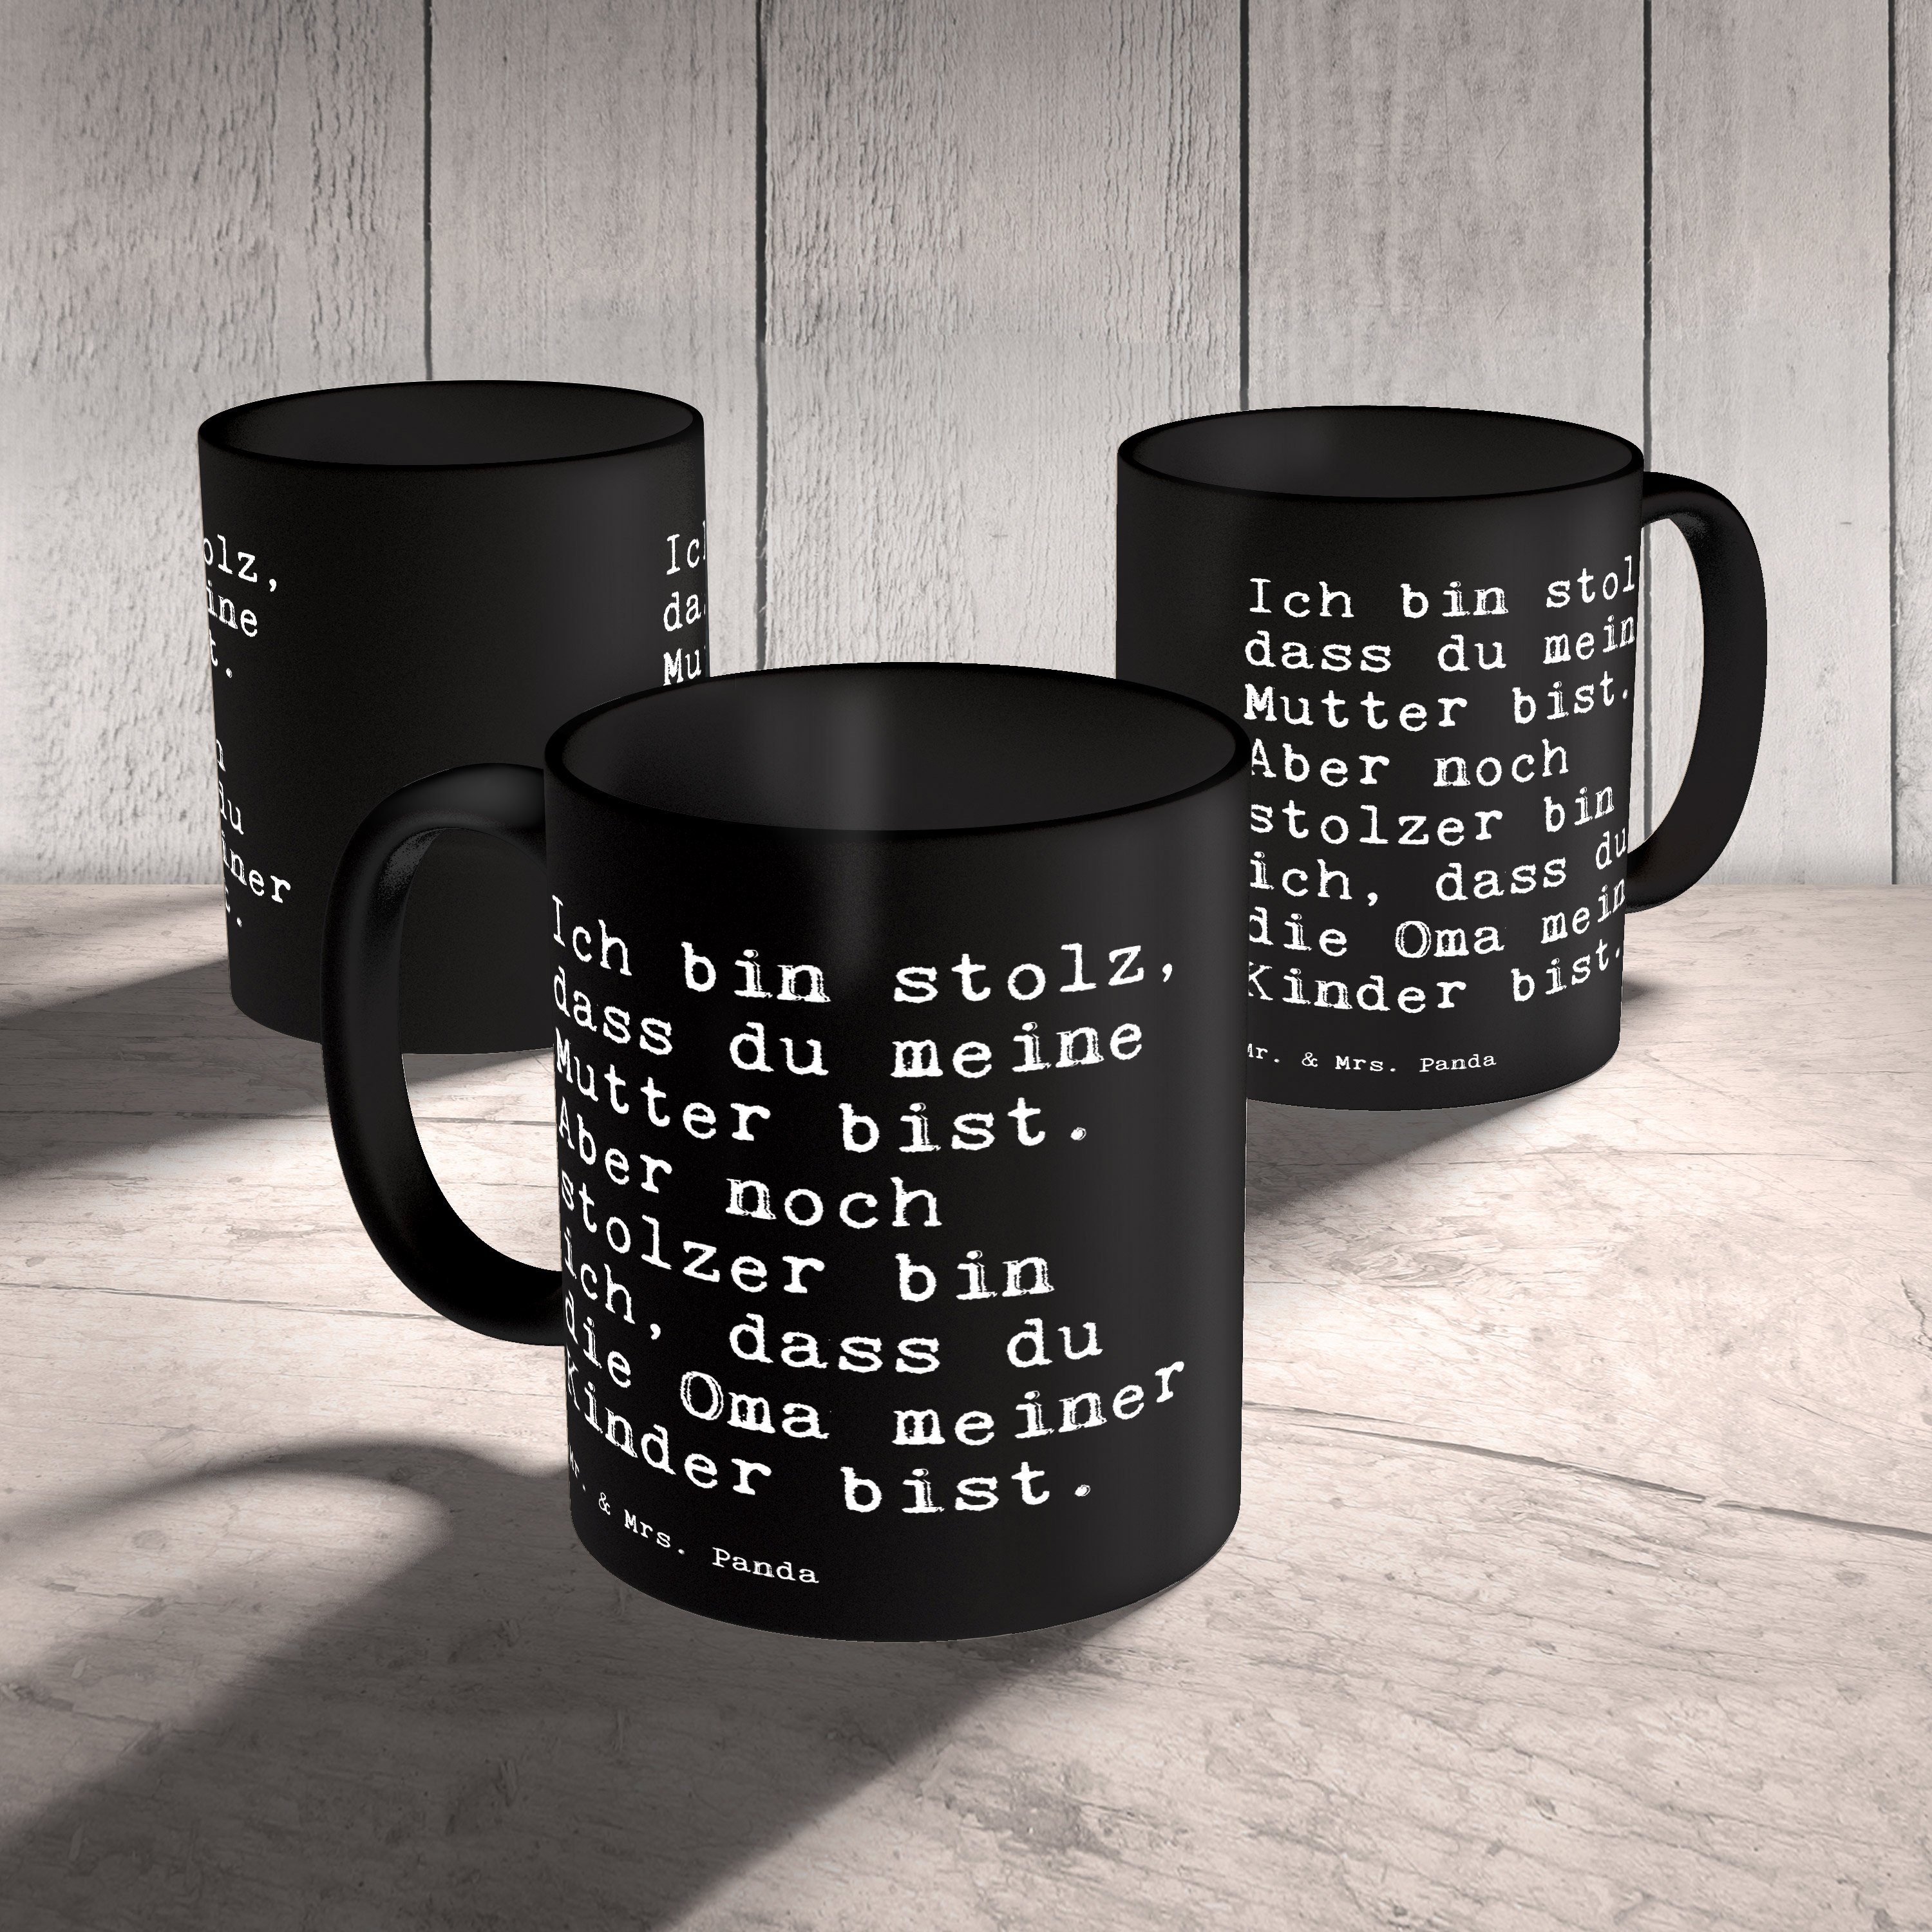 Mr. & Mrs. Panda Keramik - Geschenk, Weisheiten, Schwarz dass... Kaffeebecher, Tasse - Ich Schwarz bin stolz